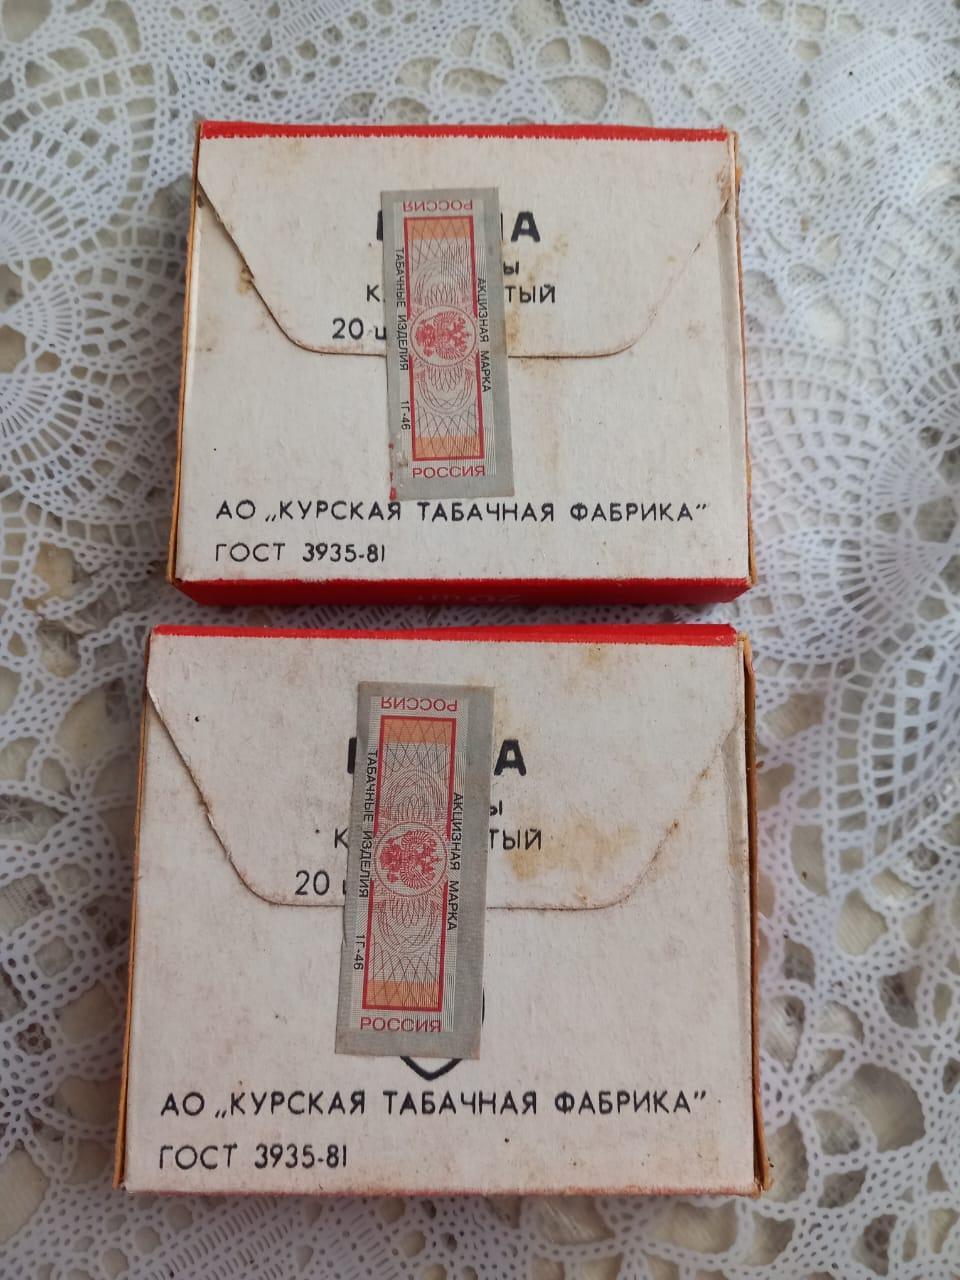 Сигаретные пачки Прима Курск СССР ГОСТ 1981 года целые винтаж ретро 1